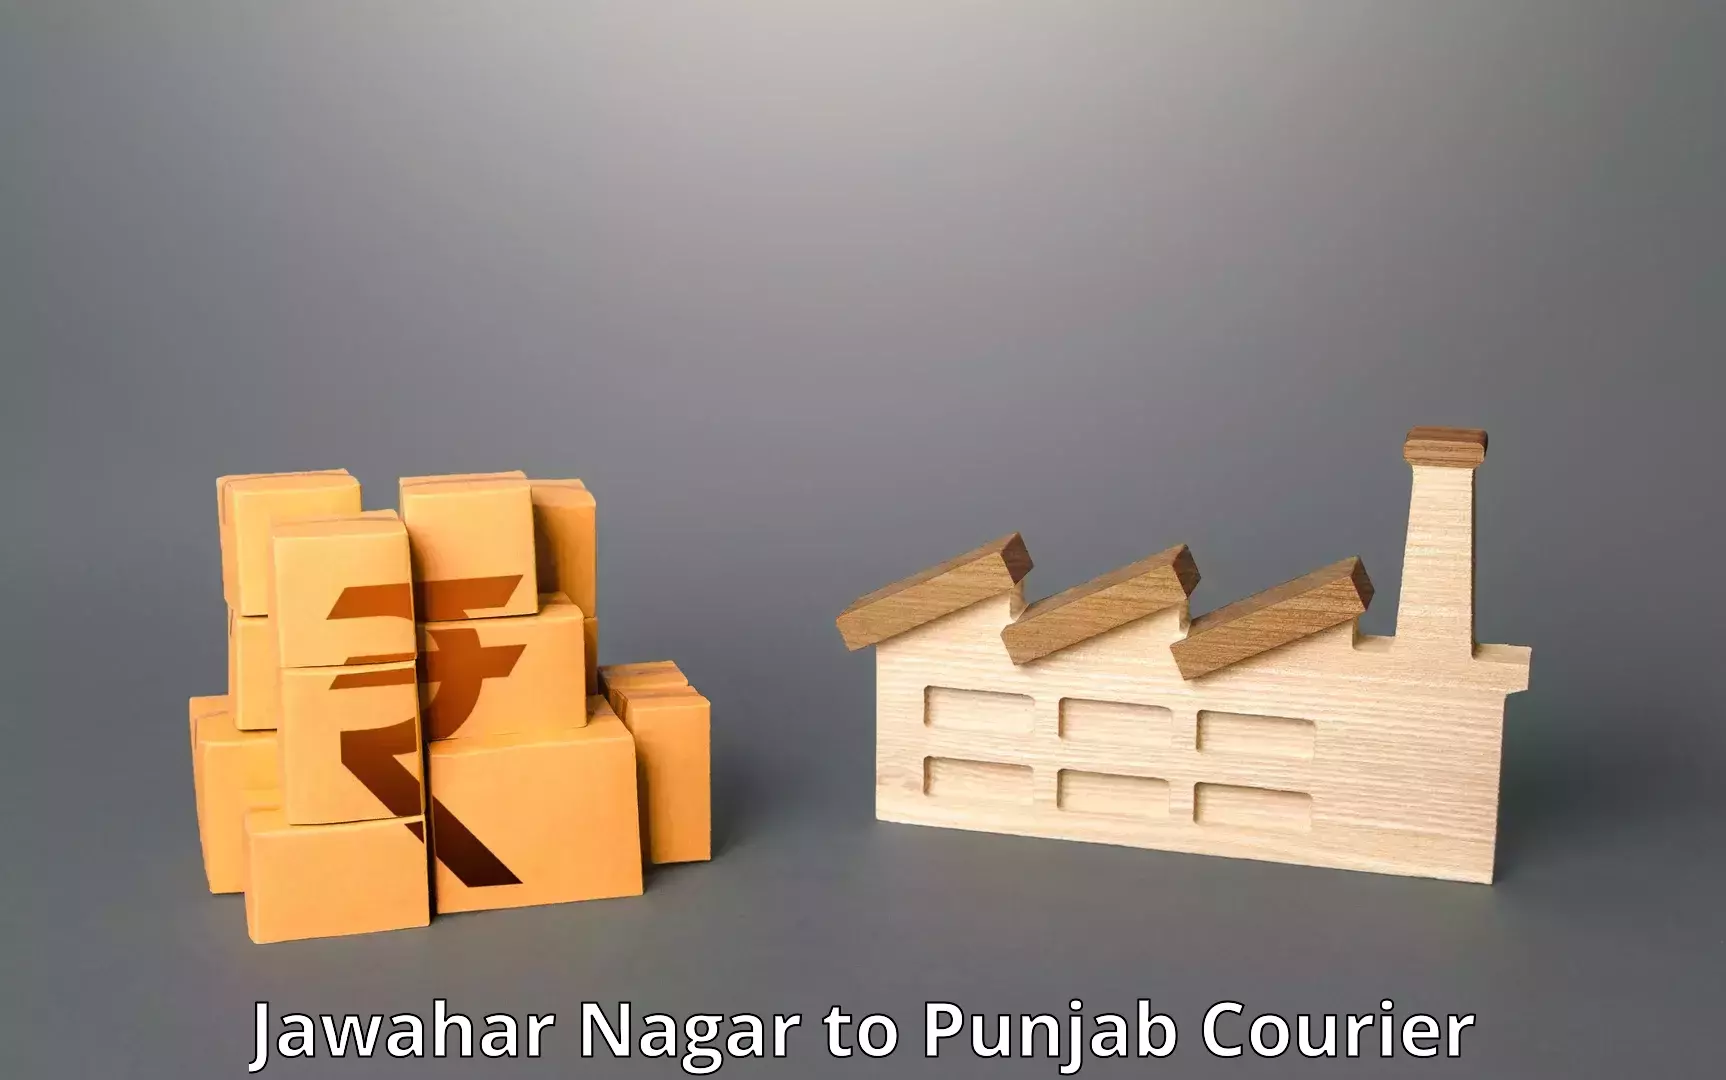 Efficient cargo handling Jawahar Nagar to Punjab